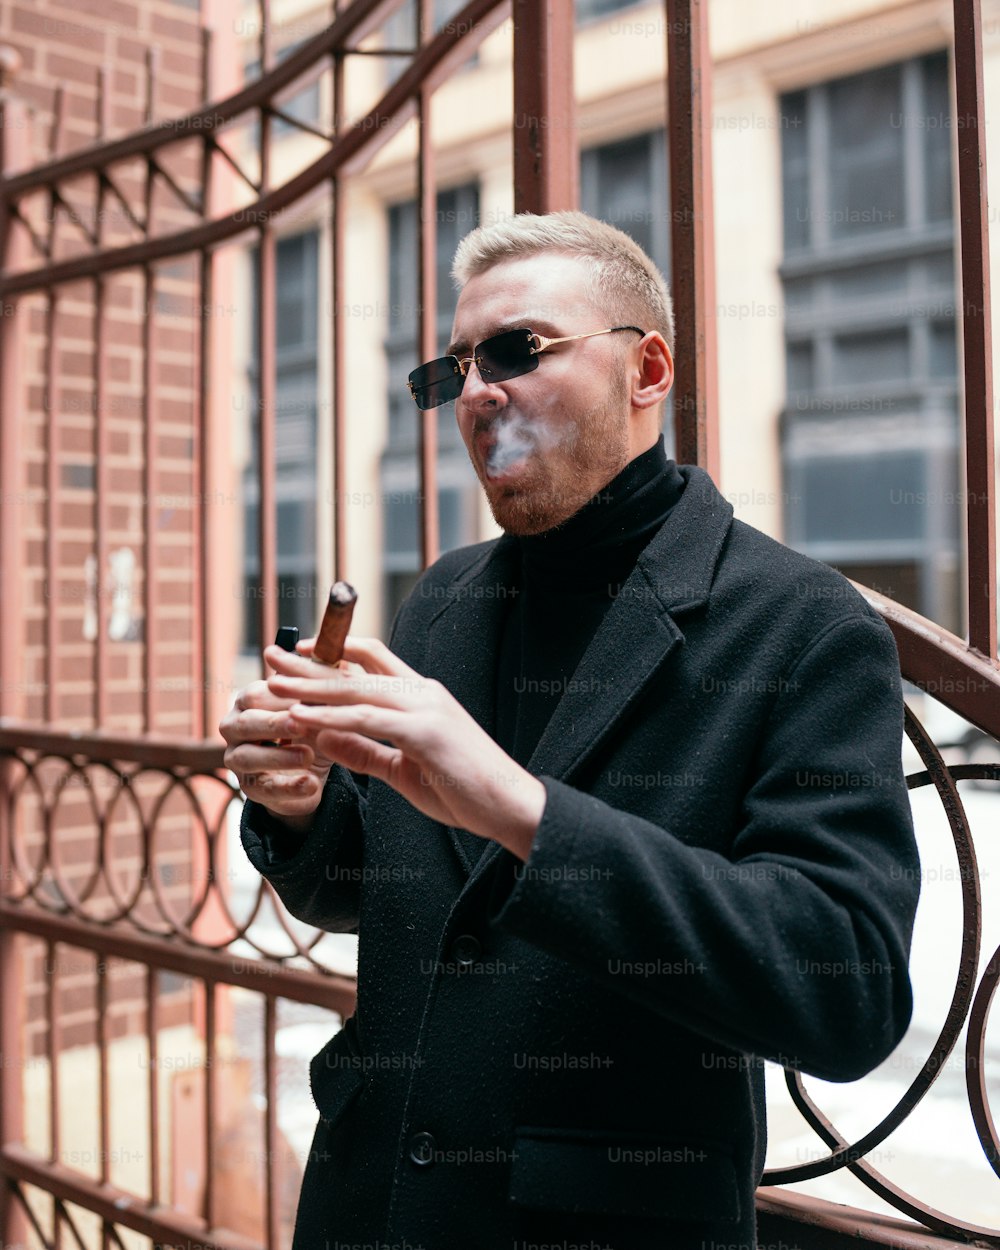 Ein Mann in einem schwarzen Mantel, der eine Zigarette raucht